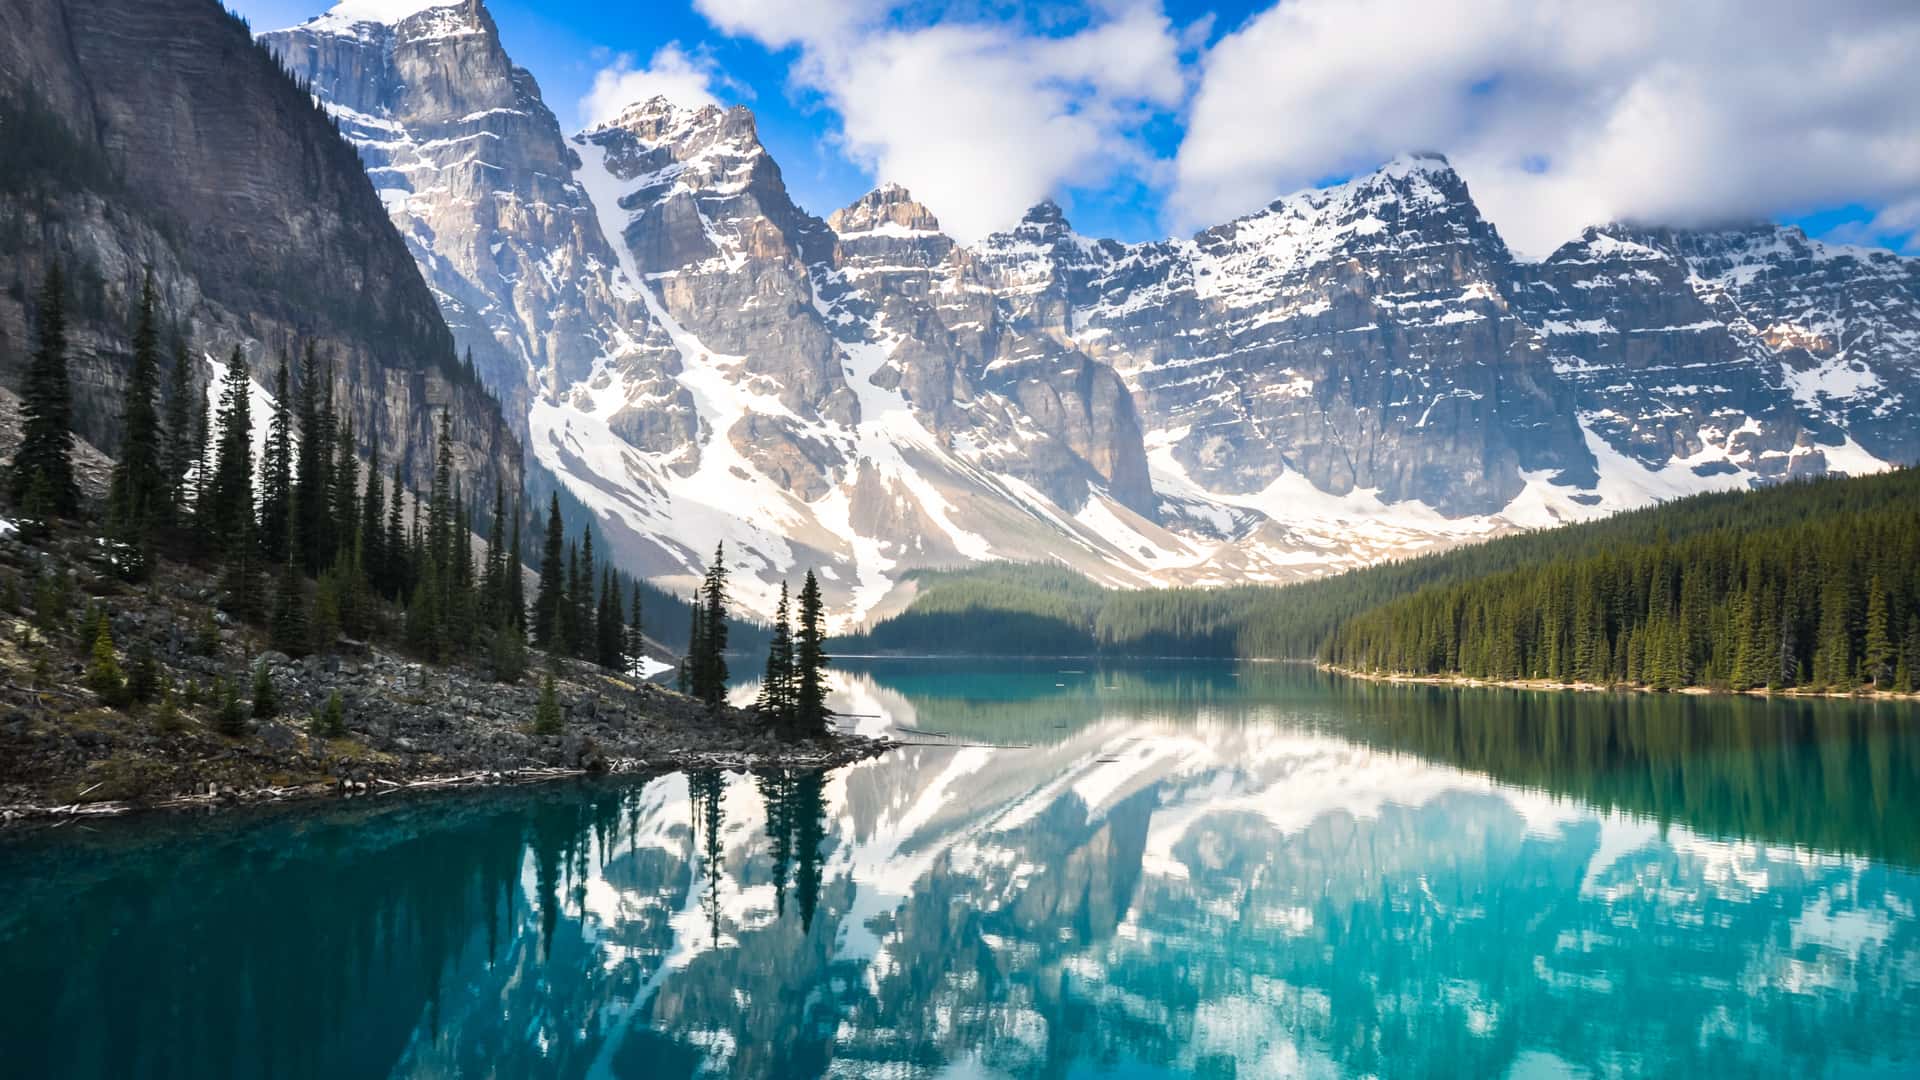 Moraine Lake, montañas rocosas en Canadá para cuyo destino se puede contratar un seguro de viaje